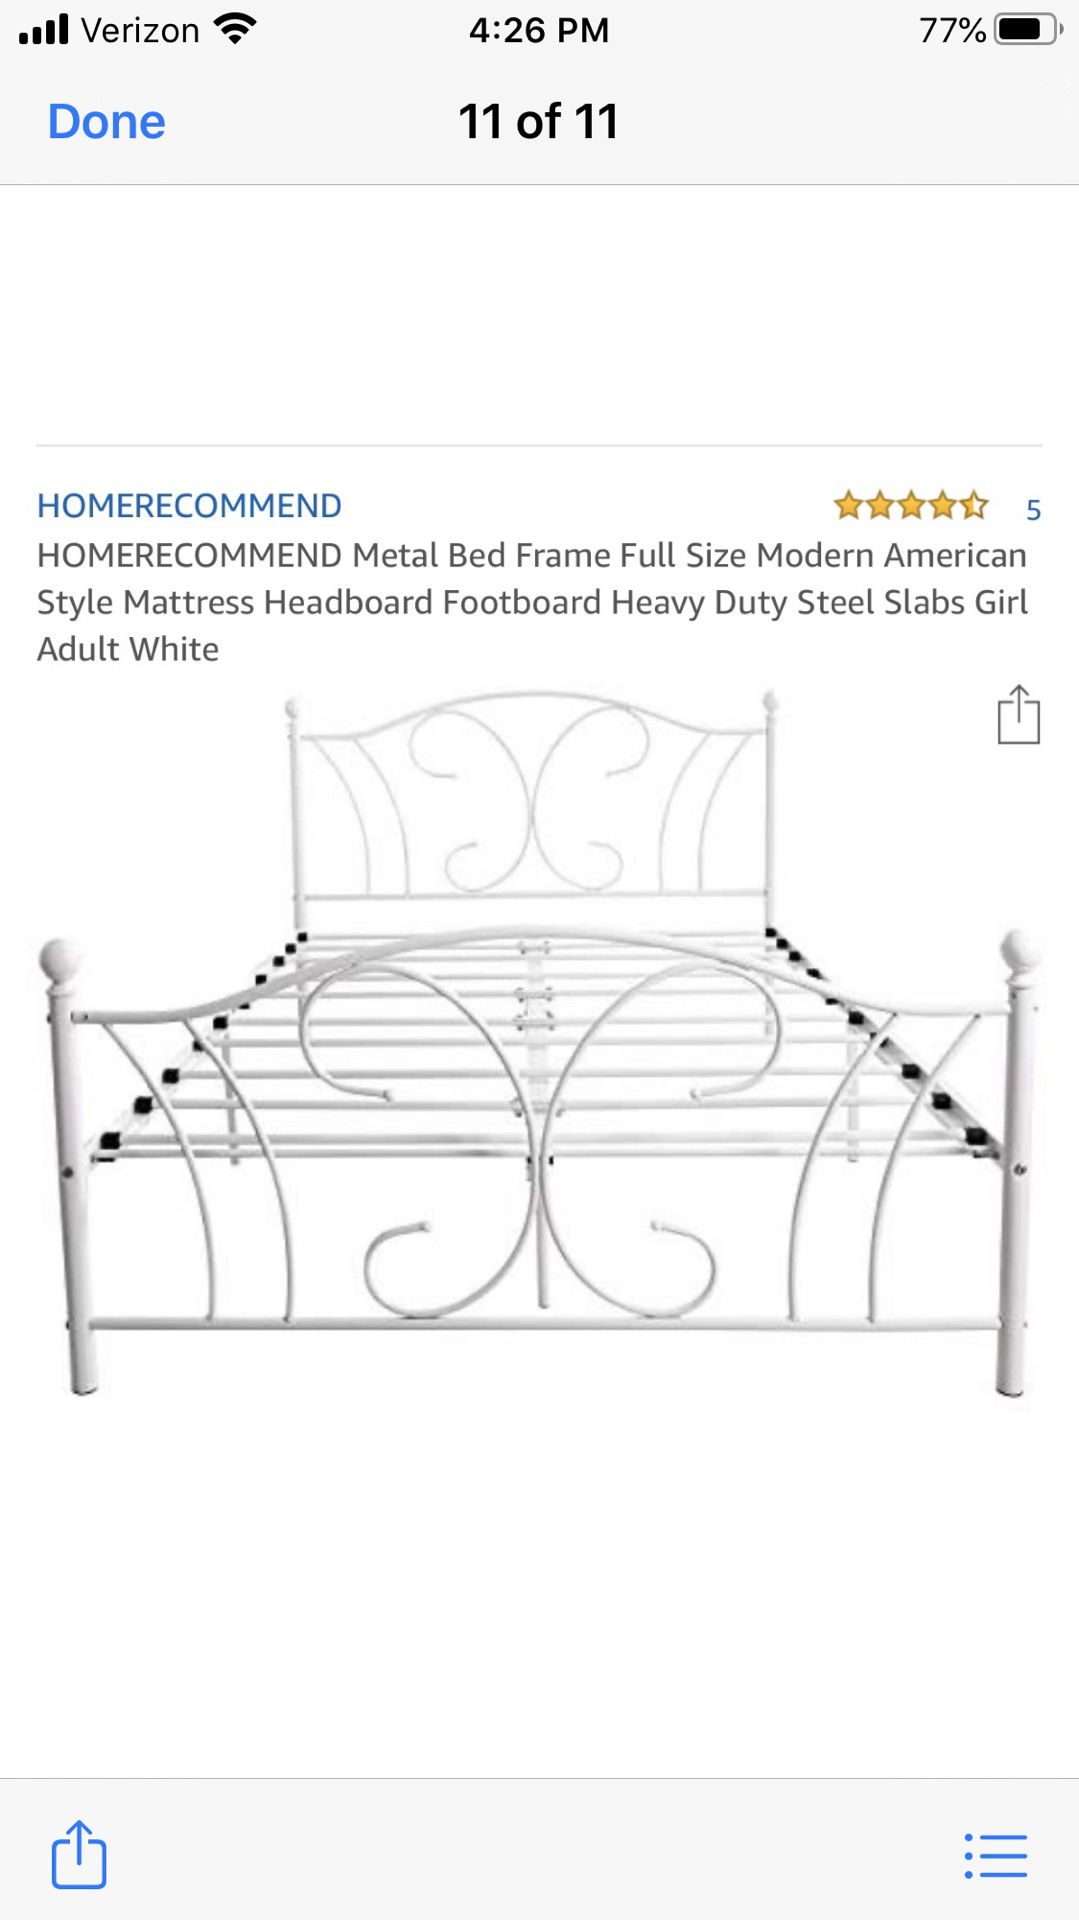 Full Size American Modern Bed Frame!!!!